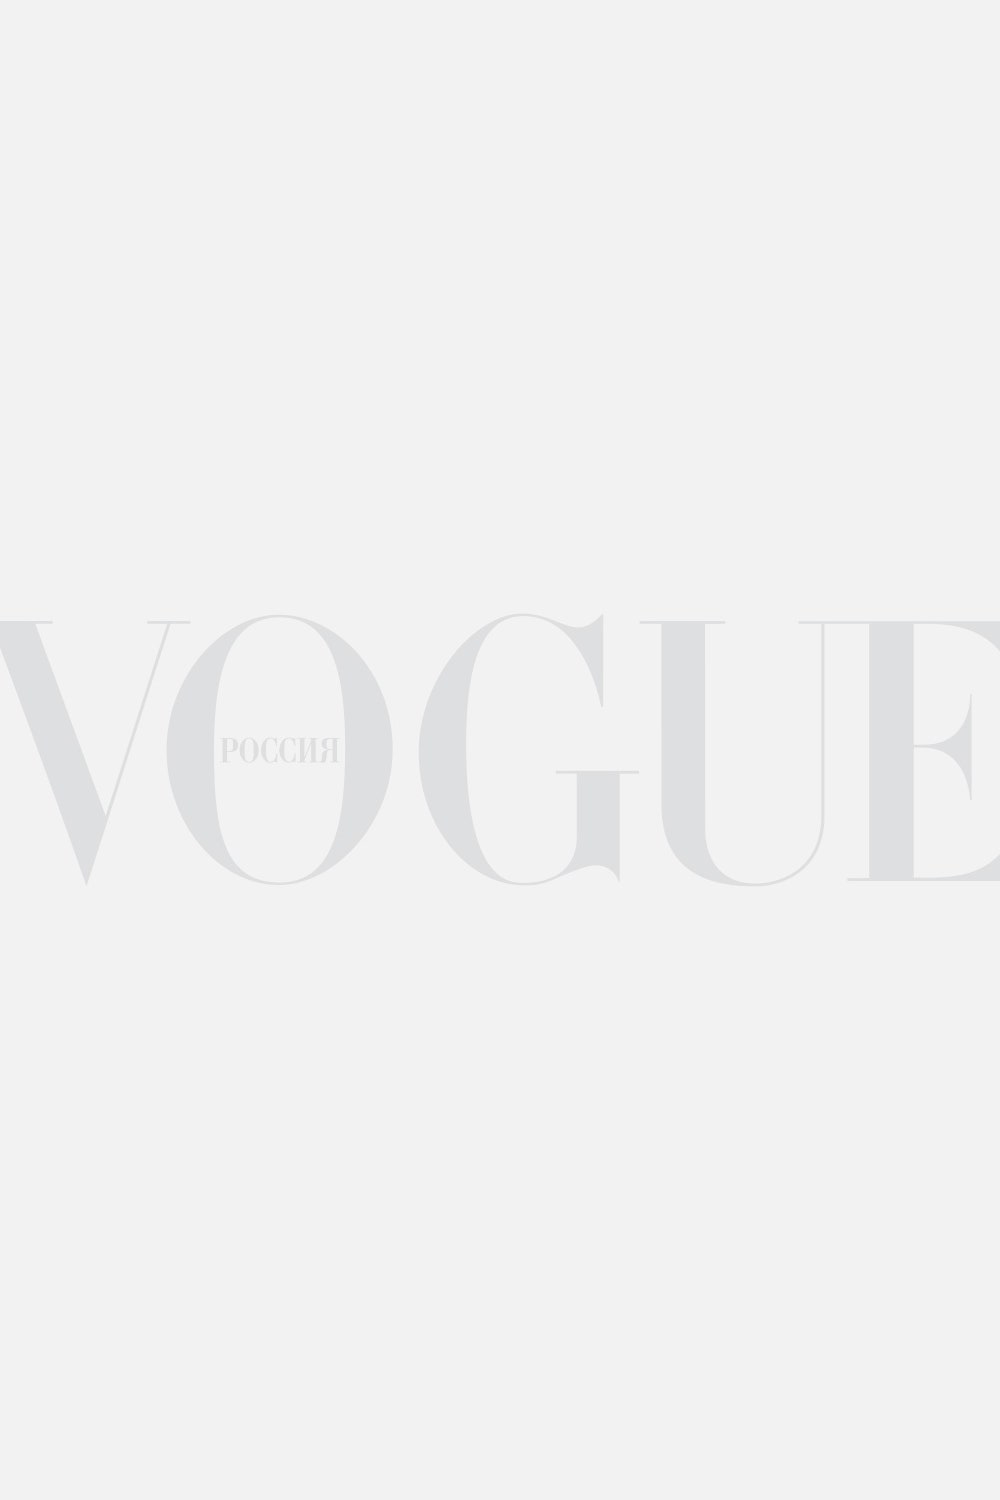 Гороскопы на Vogue.ru